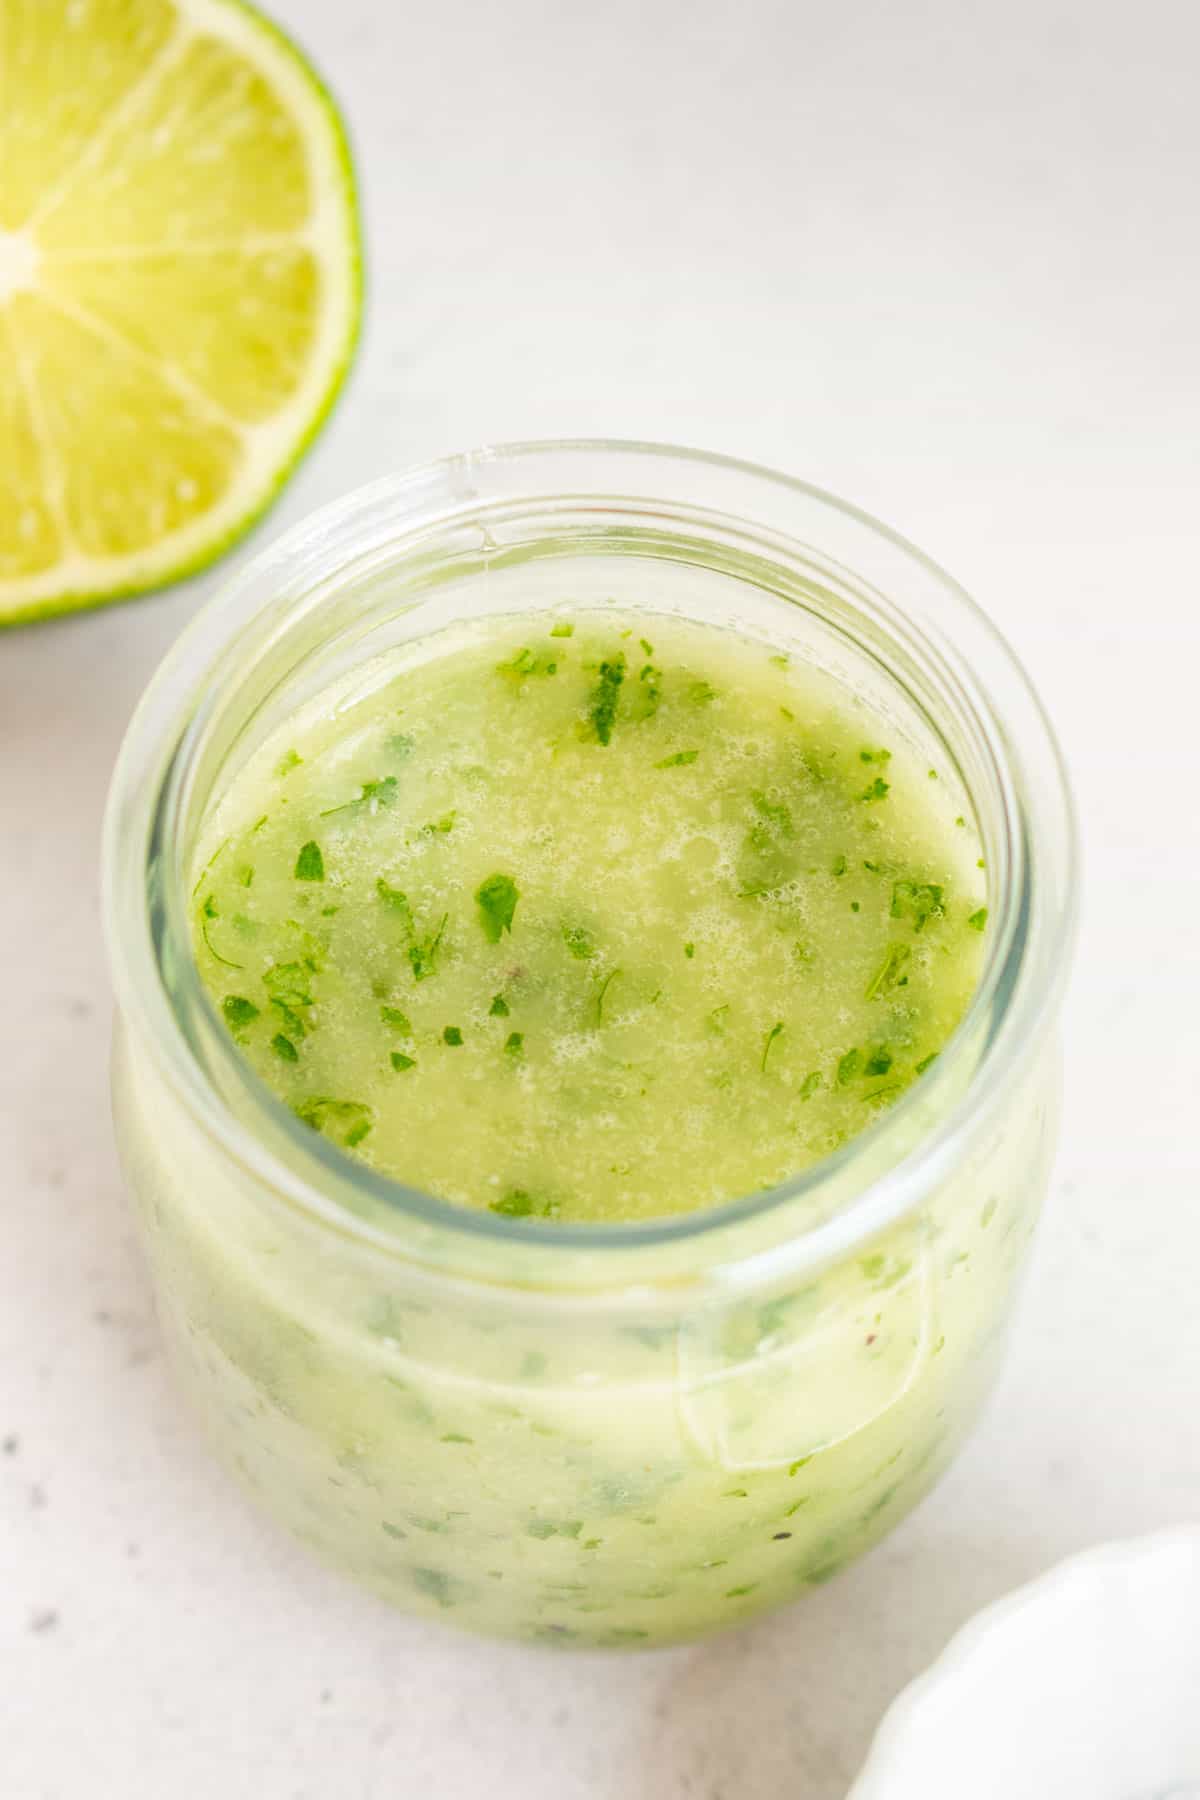 A slightly overhead angle of a jar of cilantro lime vinaigrette.